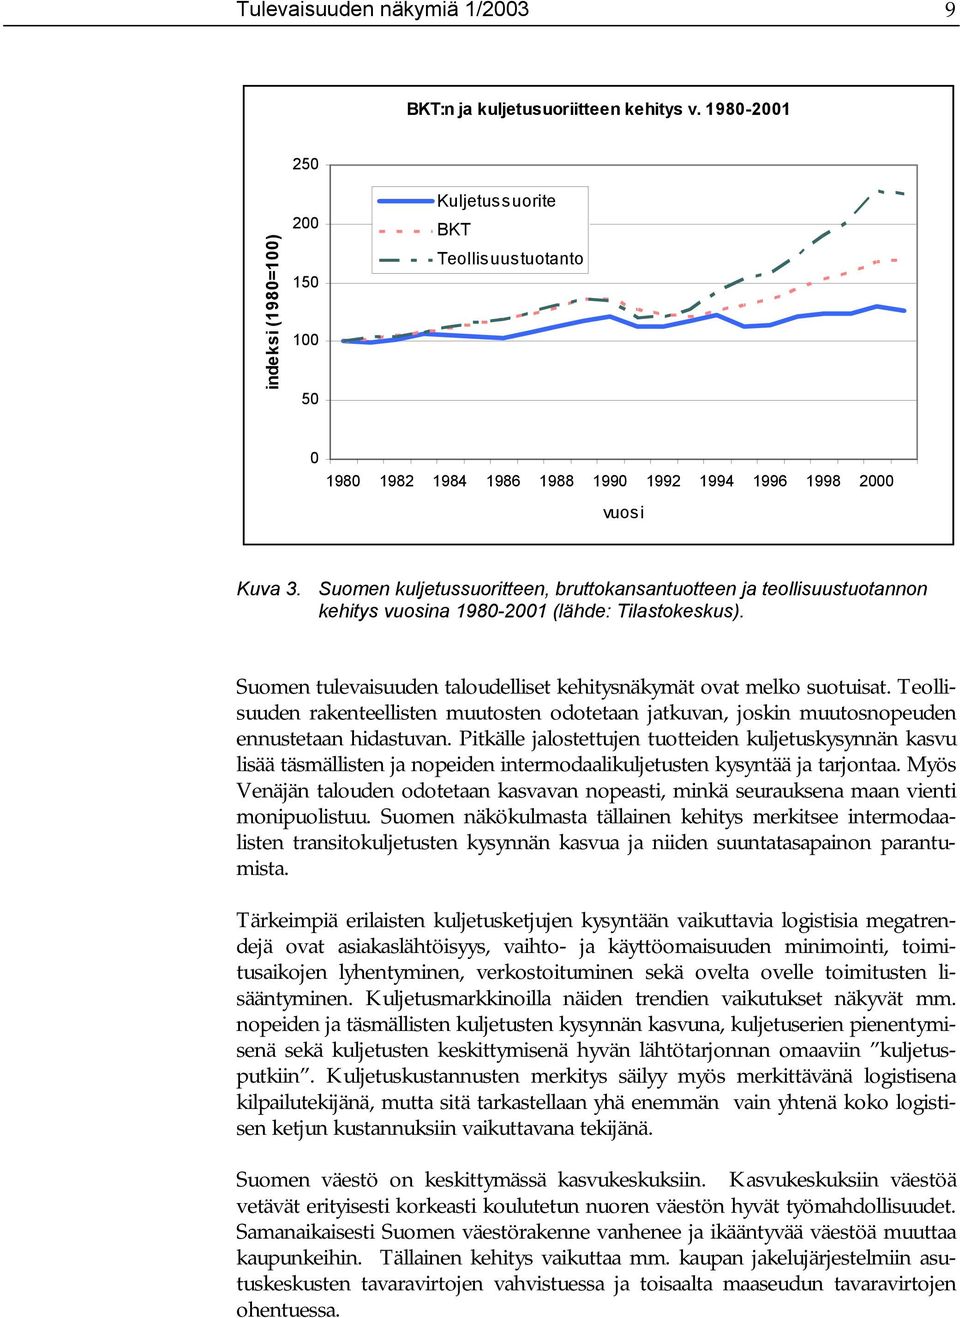 Suomen kuljetussuoritteen, bruttokansantuotteen ja teollisuustuotannon kehitys vuosina 1980-2001 (lähde: Tilastokeskus). Suomen tulevaisuuden taloudelliset kehitysnäkymät ovat melko suotuisat.